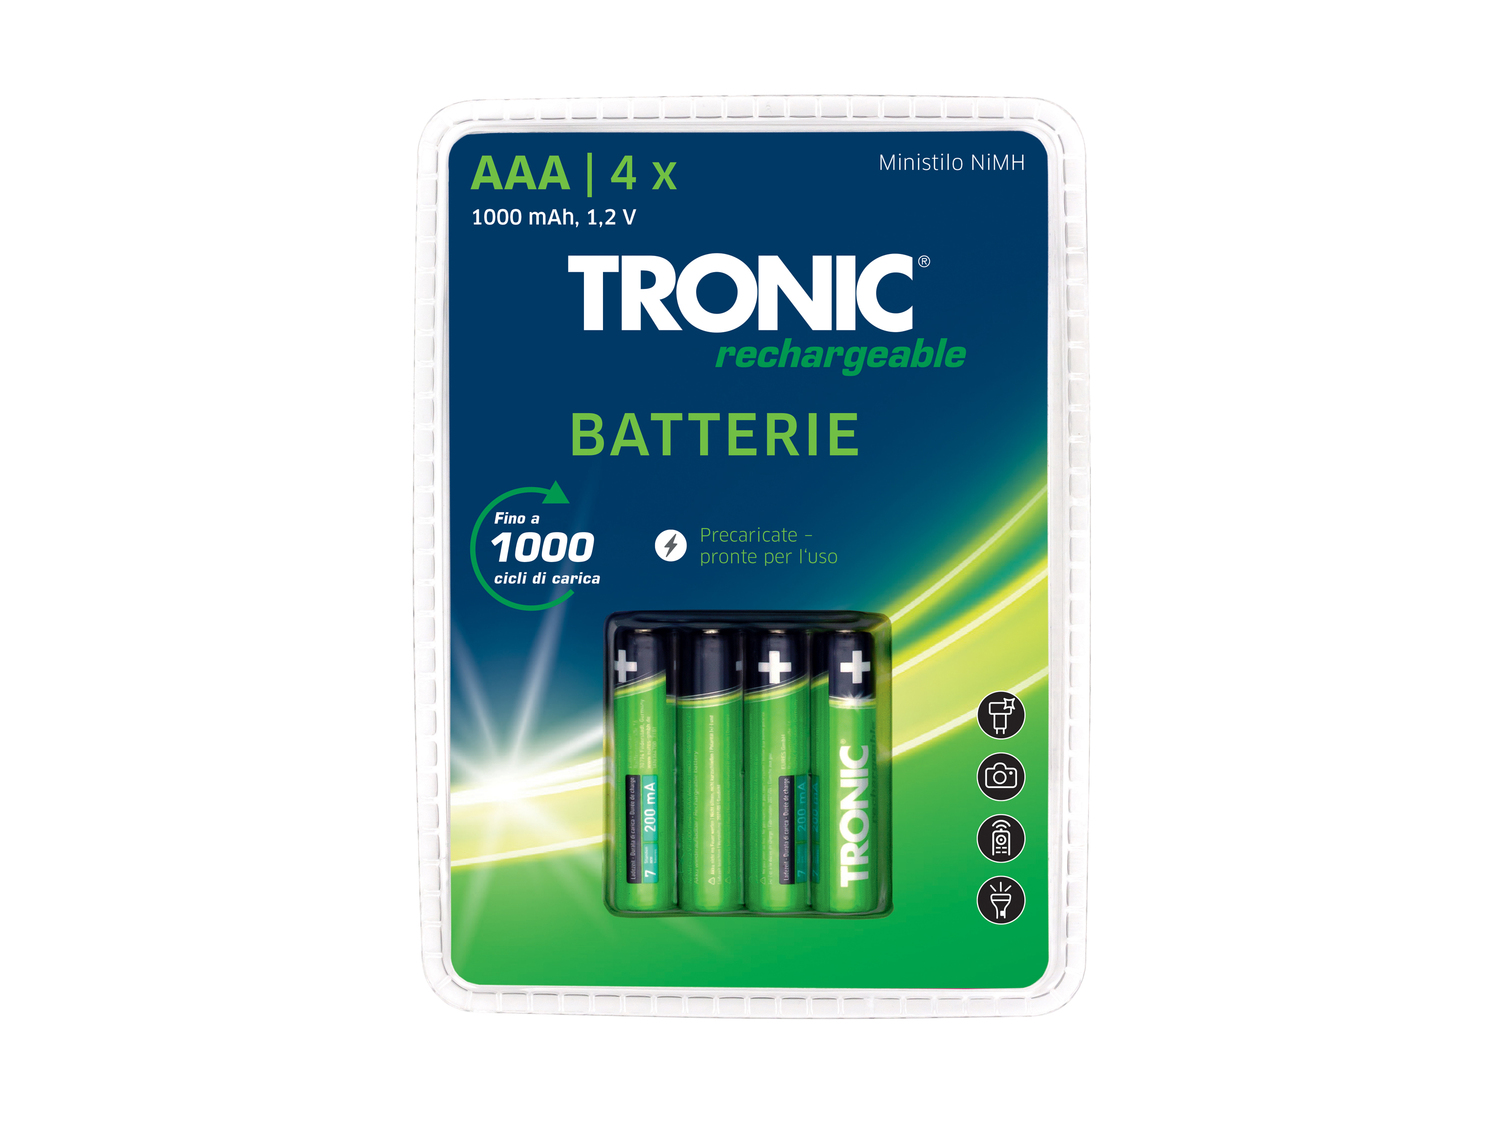 Batterie ricaricabili Tronic, prezzo 3.99 &#8364;  
4 pezzi
Caratteristiche
